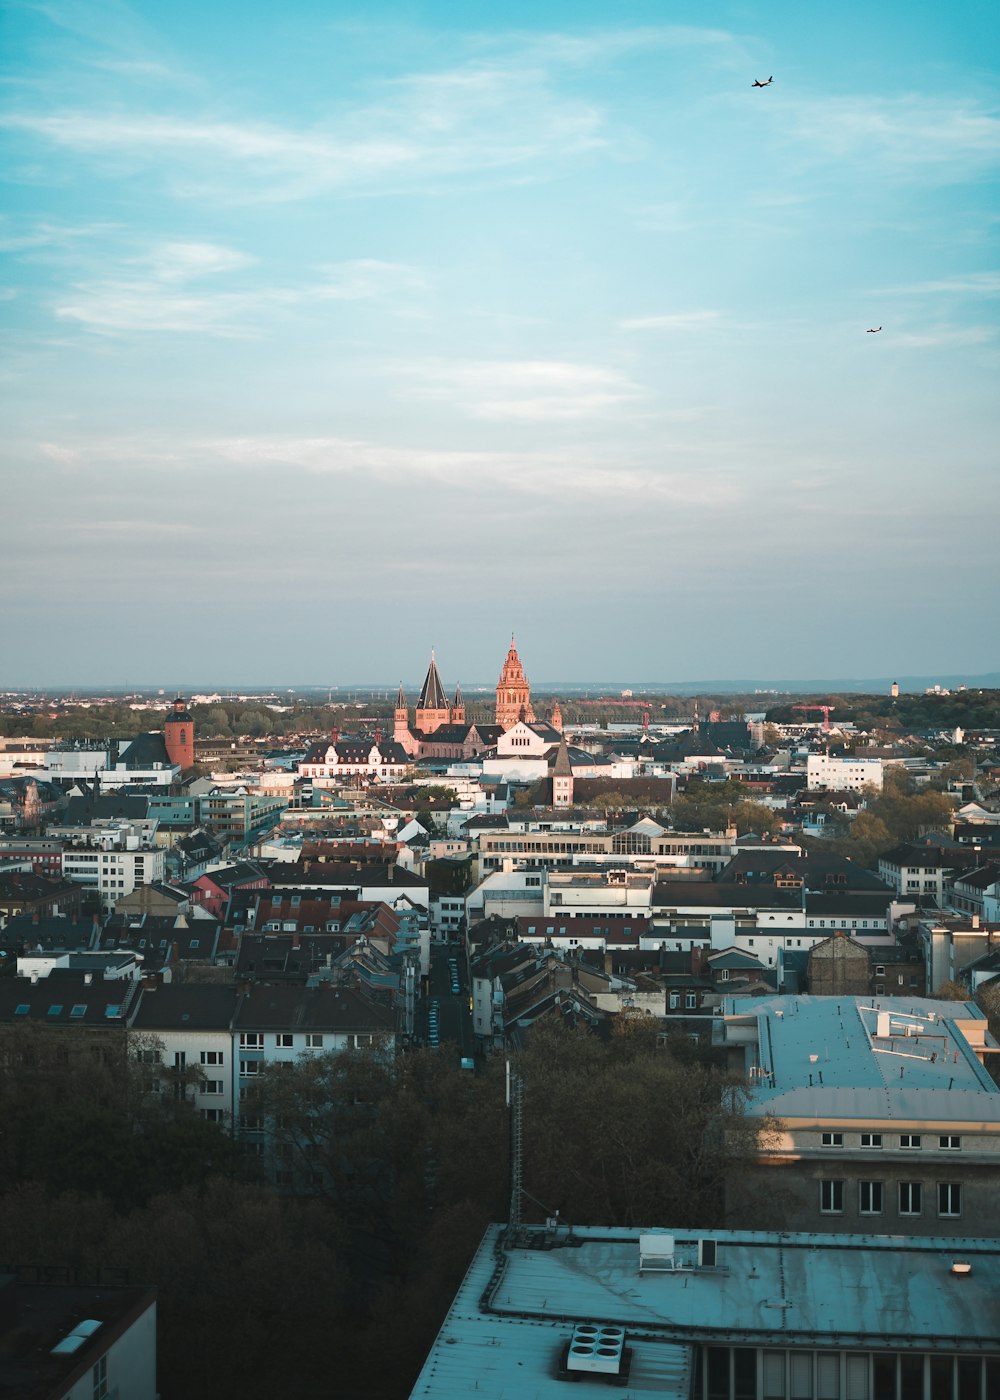 Una vista de una ciudad desde lo alto de un edificio